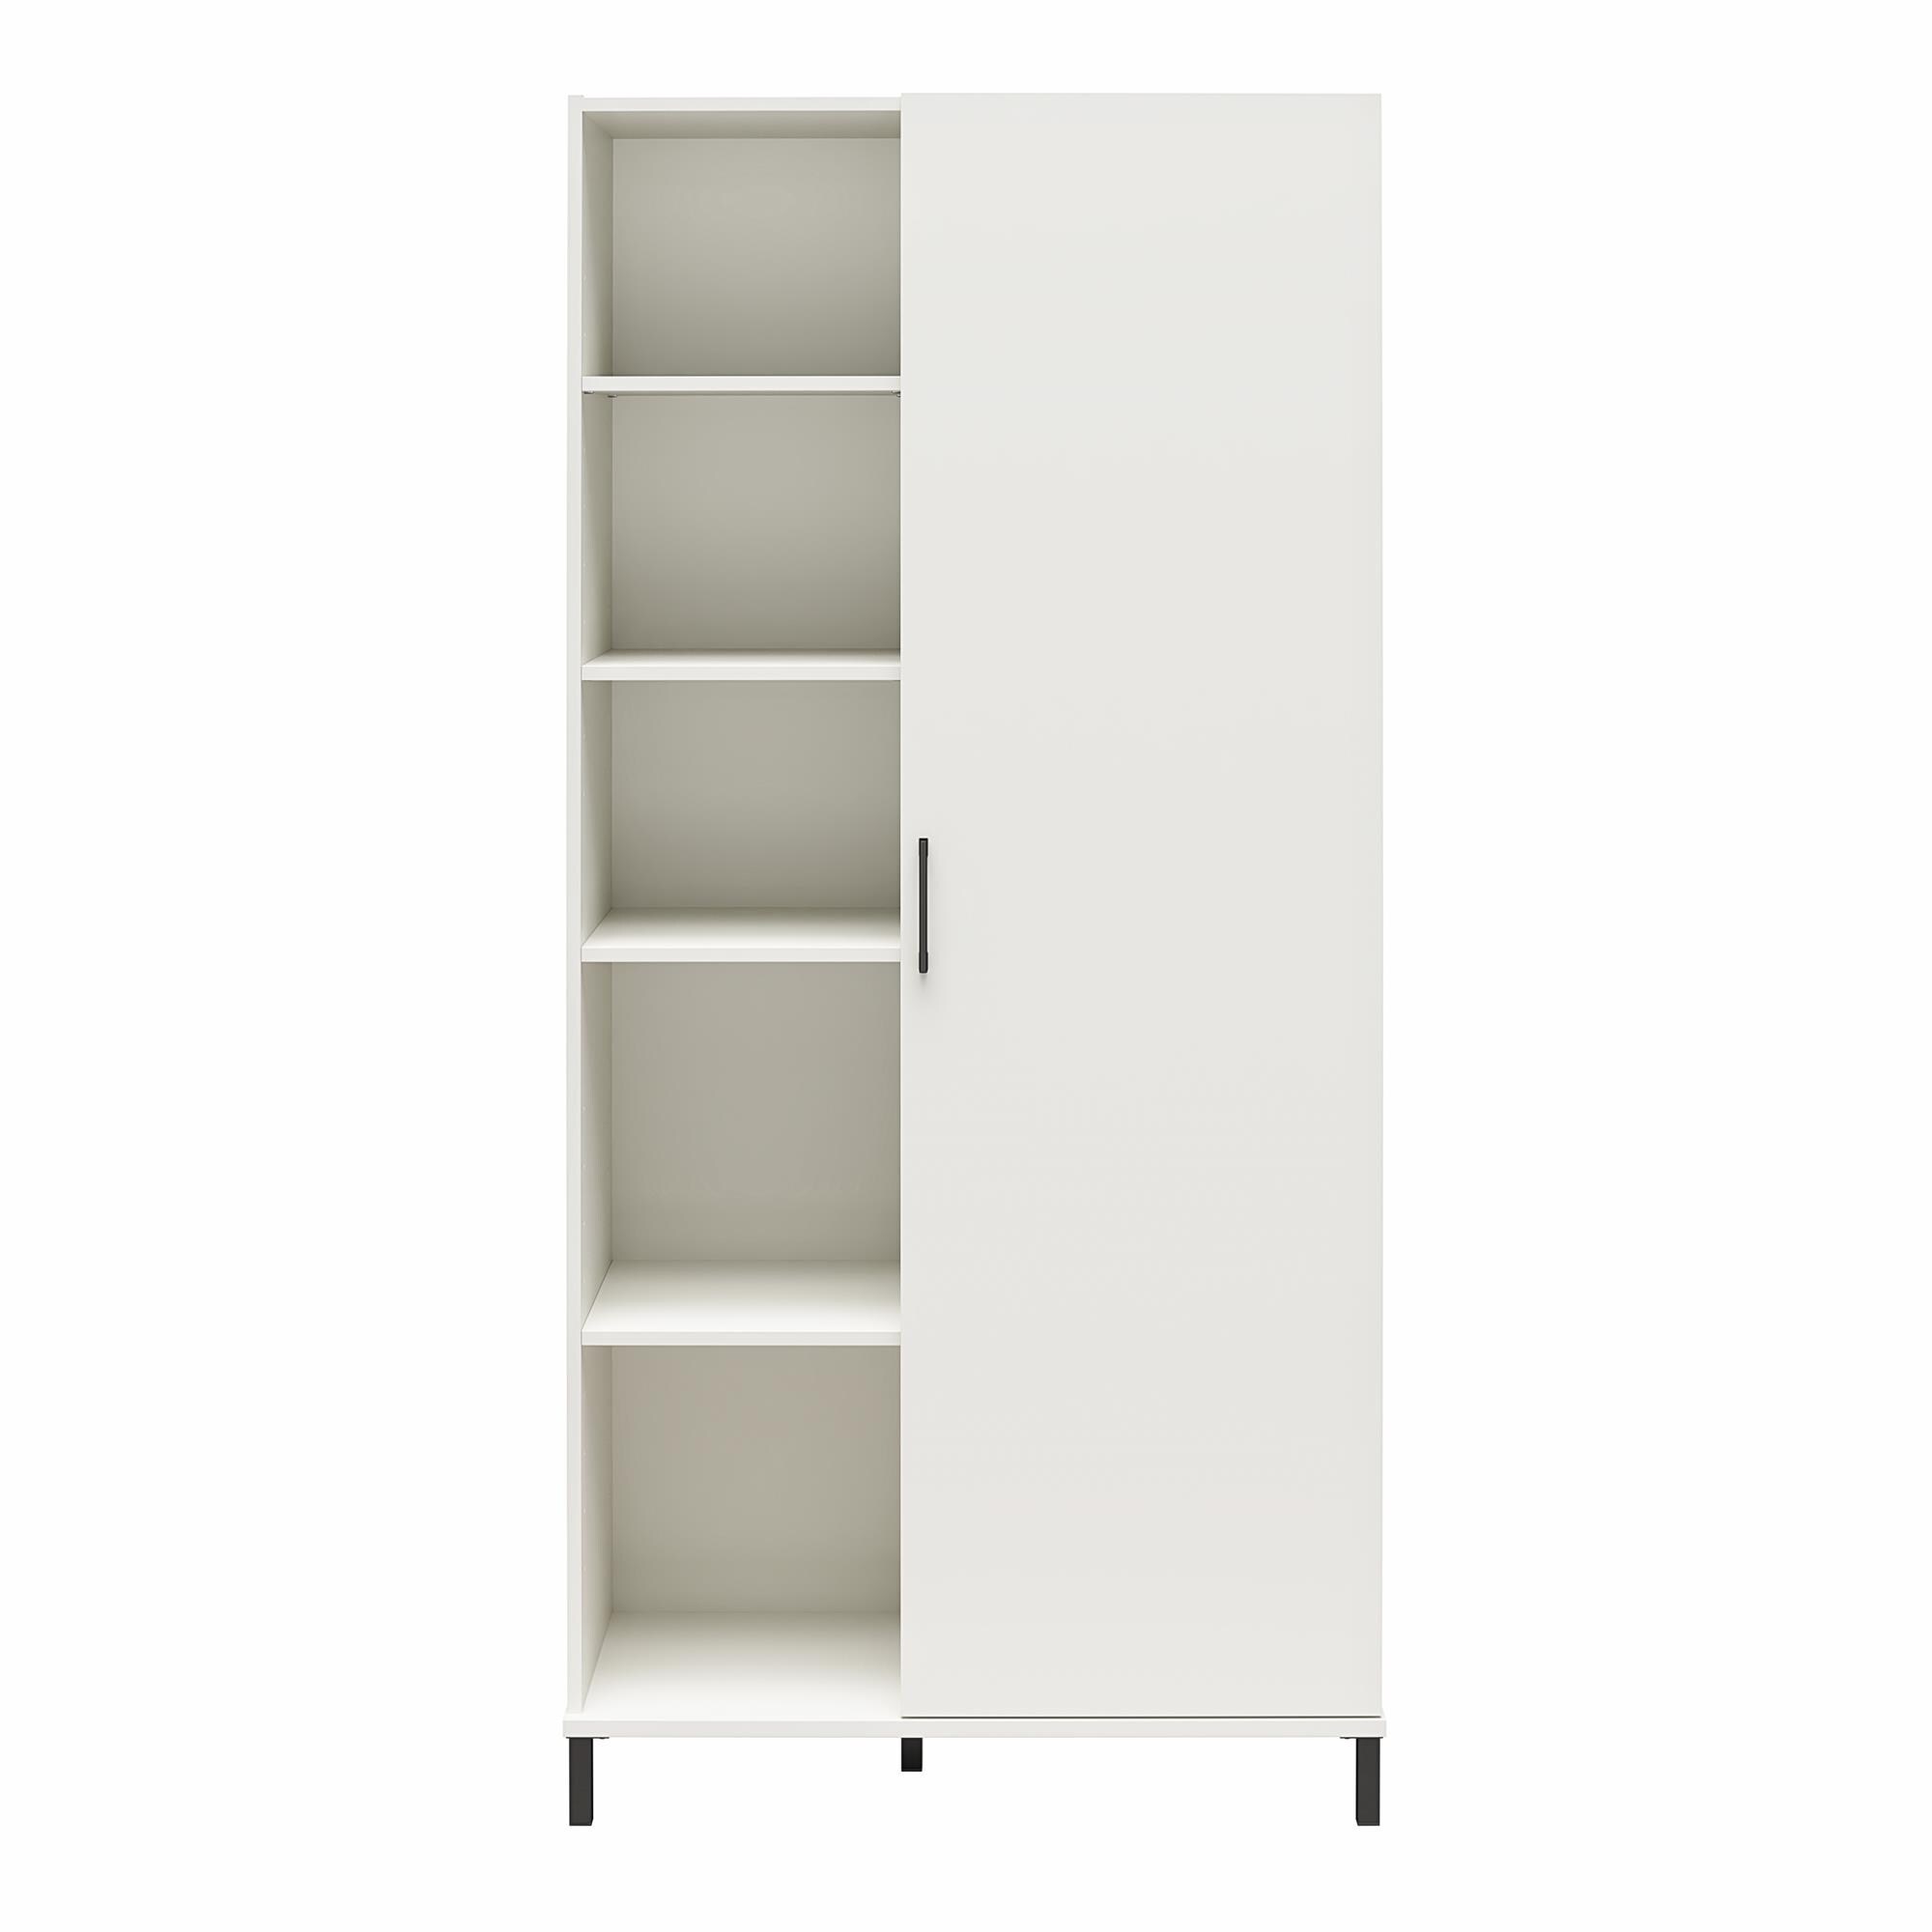 Omgekeerd Suri Uitvoerder 10 Shelf Utility Storage Cabinets at Lowes.com